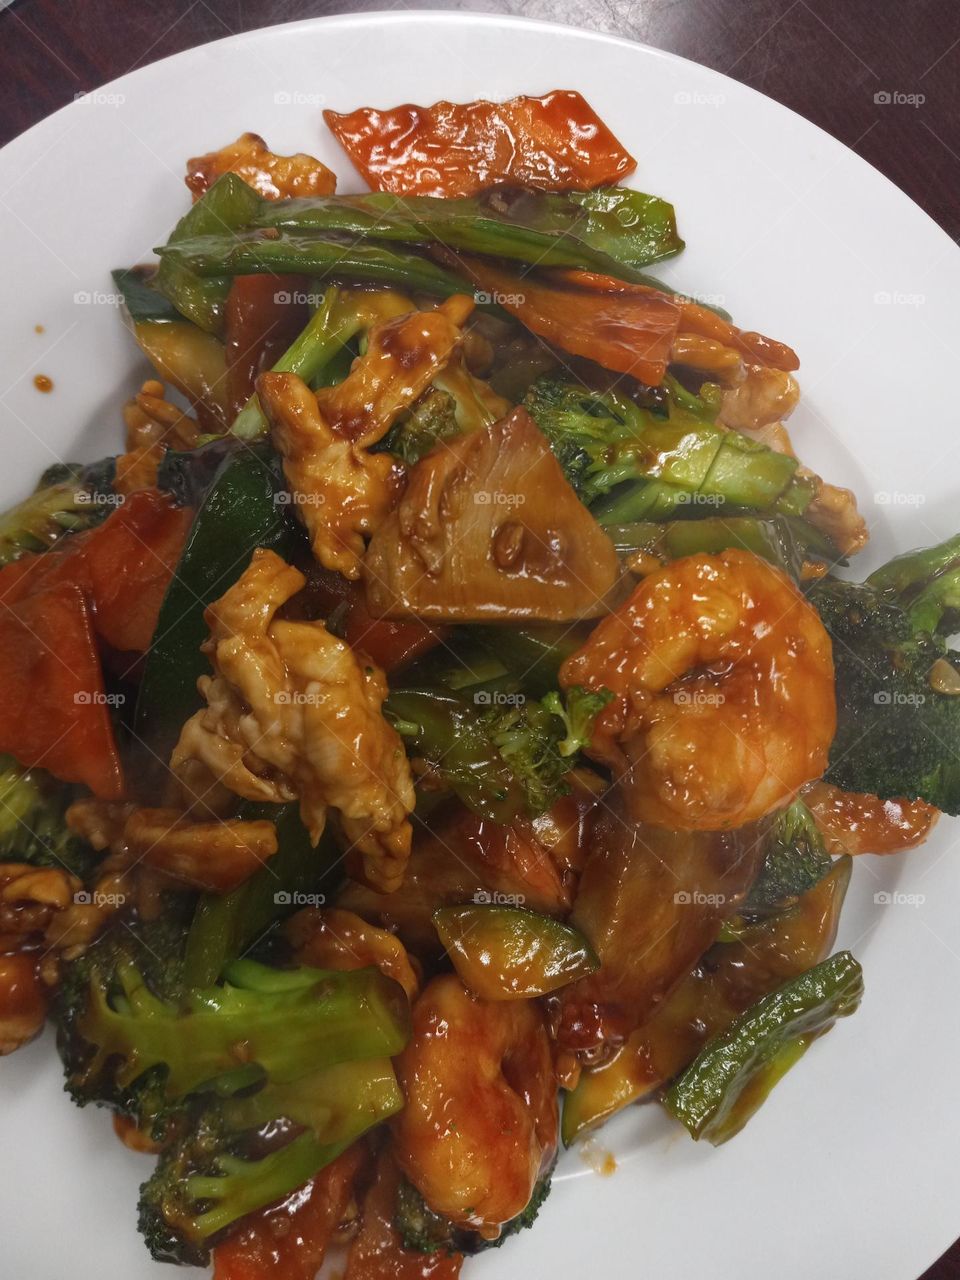 Chinese dish